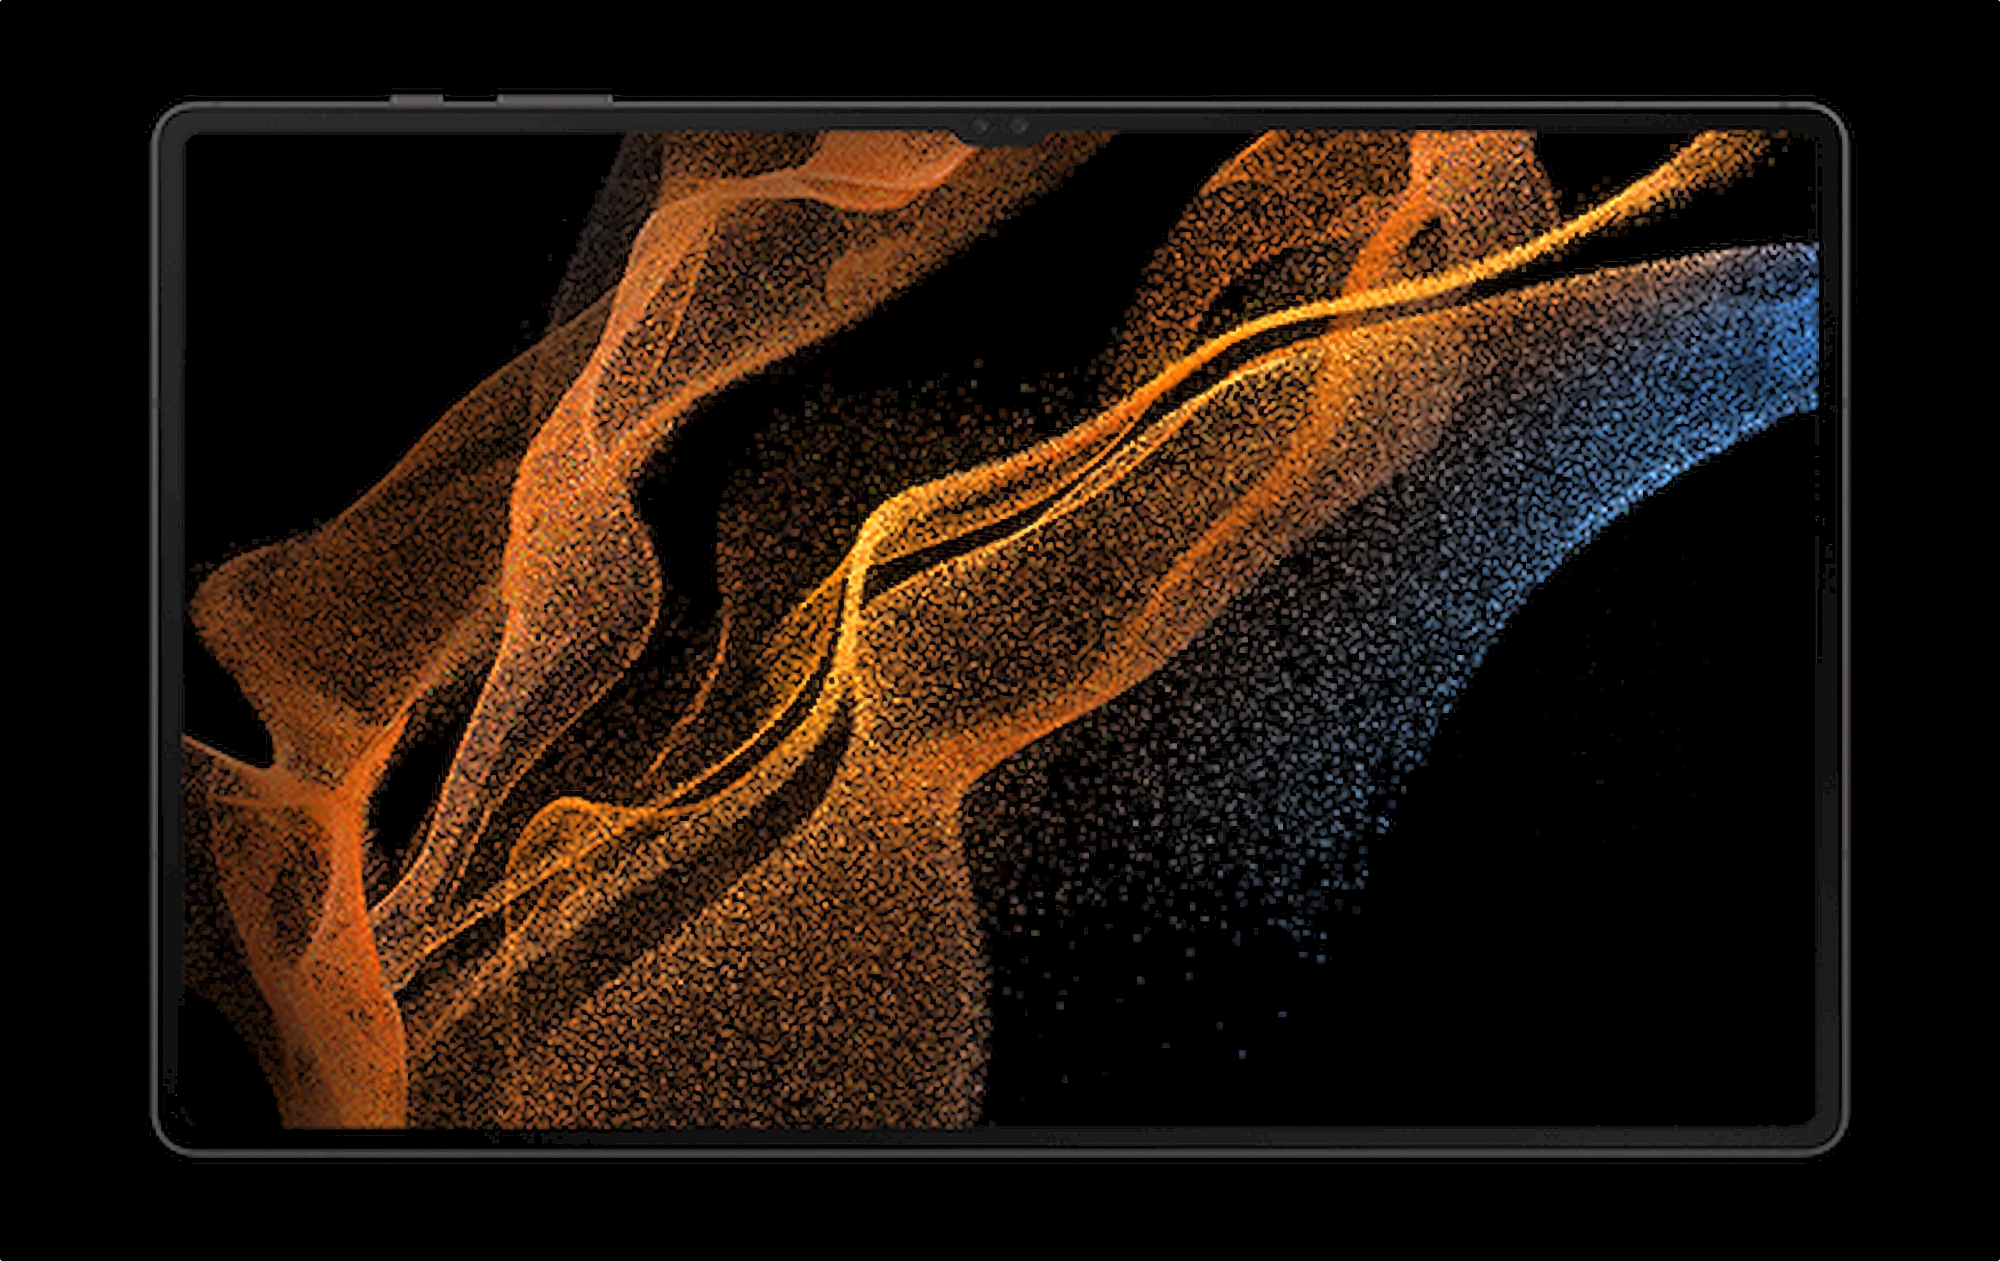 Pantalla AMOLED de 14,6 ″, chip Snapdragon 8 Gen 1 y carga de 45 vatios: especificaciones detalladas de Galaxy Tab S8 Ultra filtradas a la red